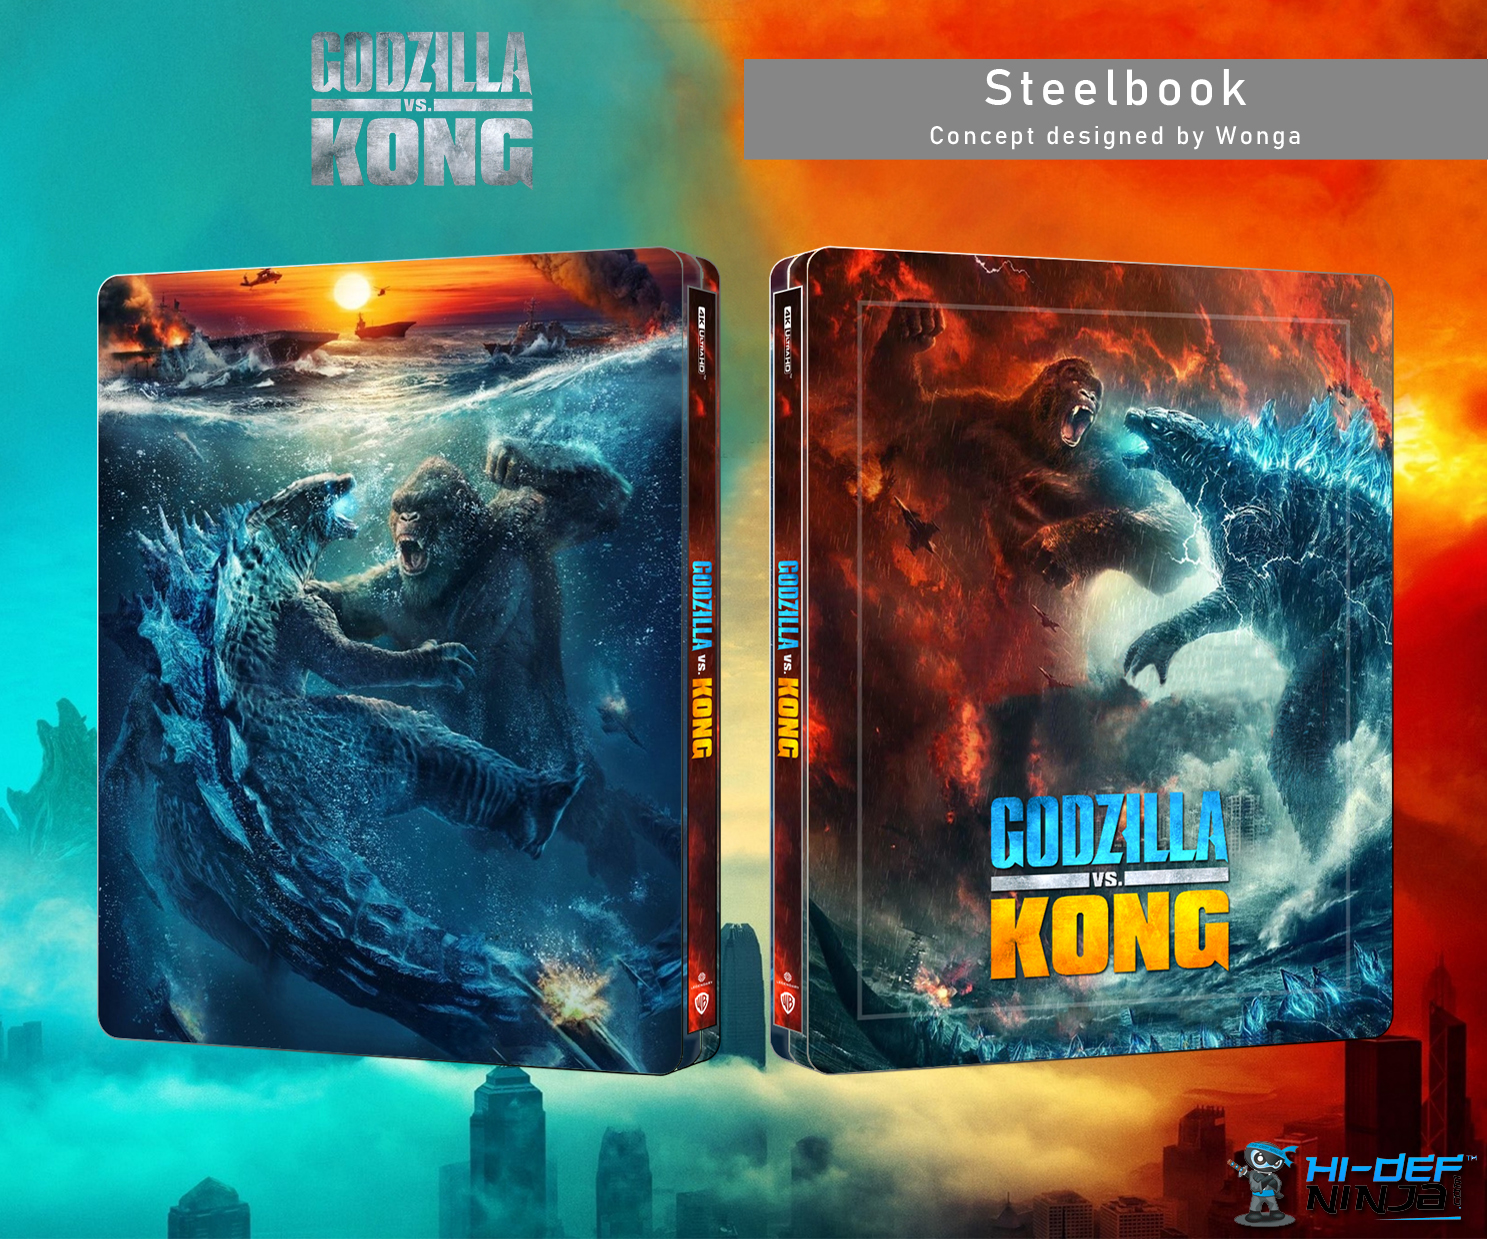 Godzilla vs Kong (whole).jpg